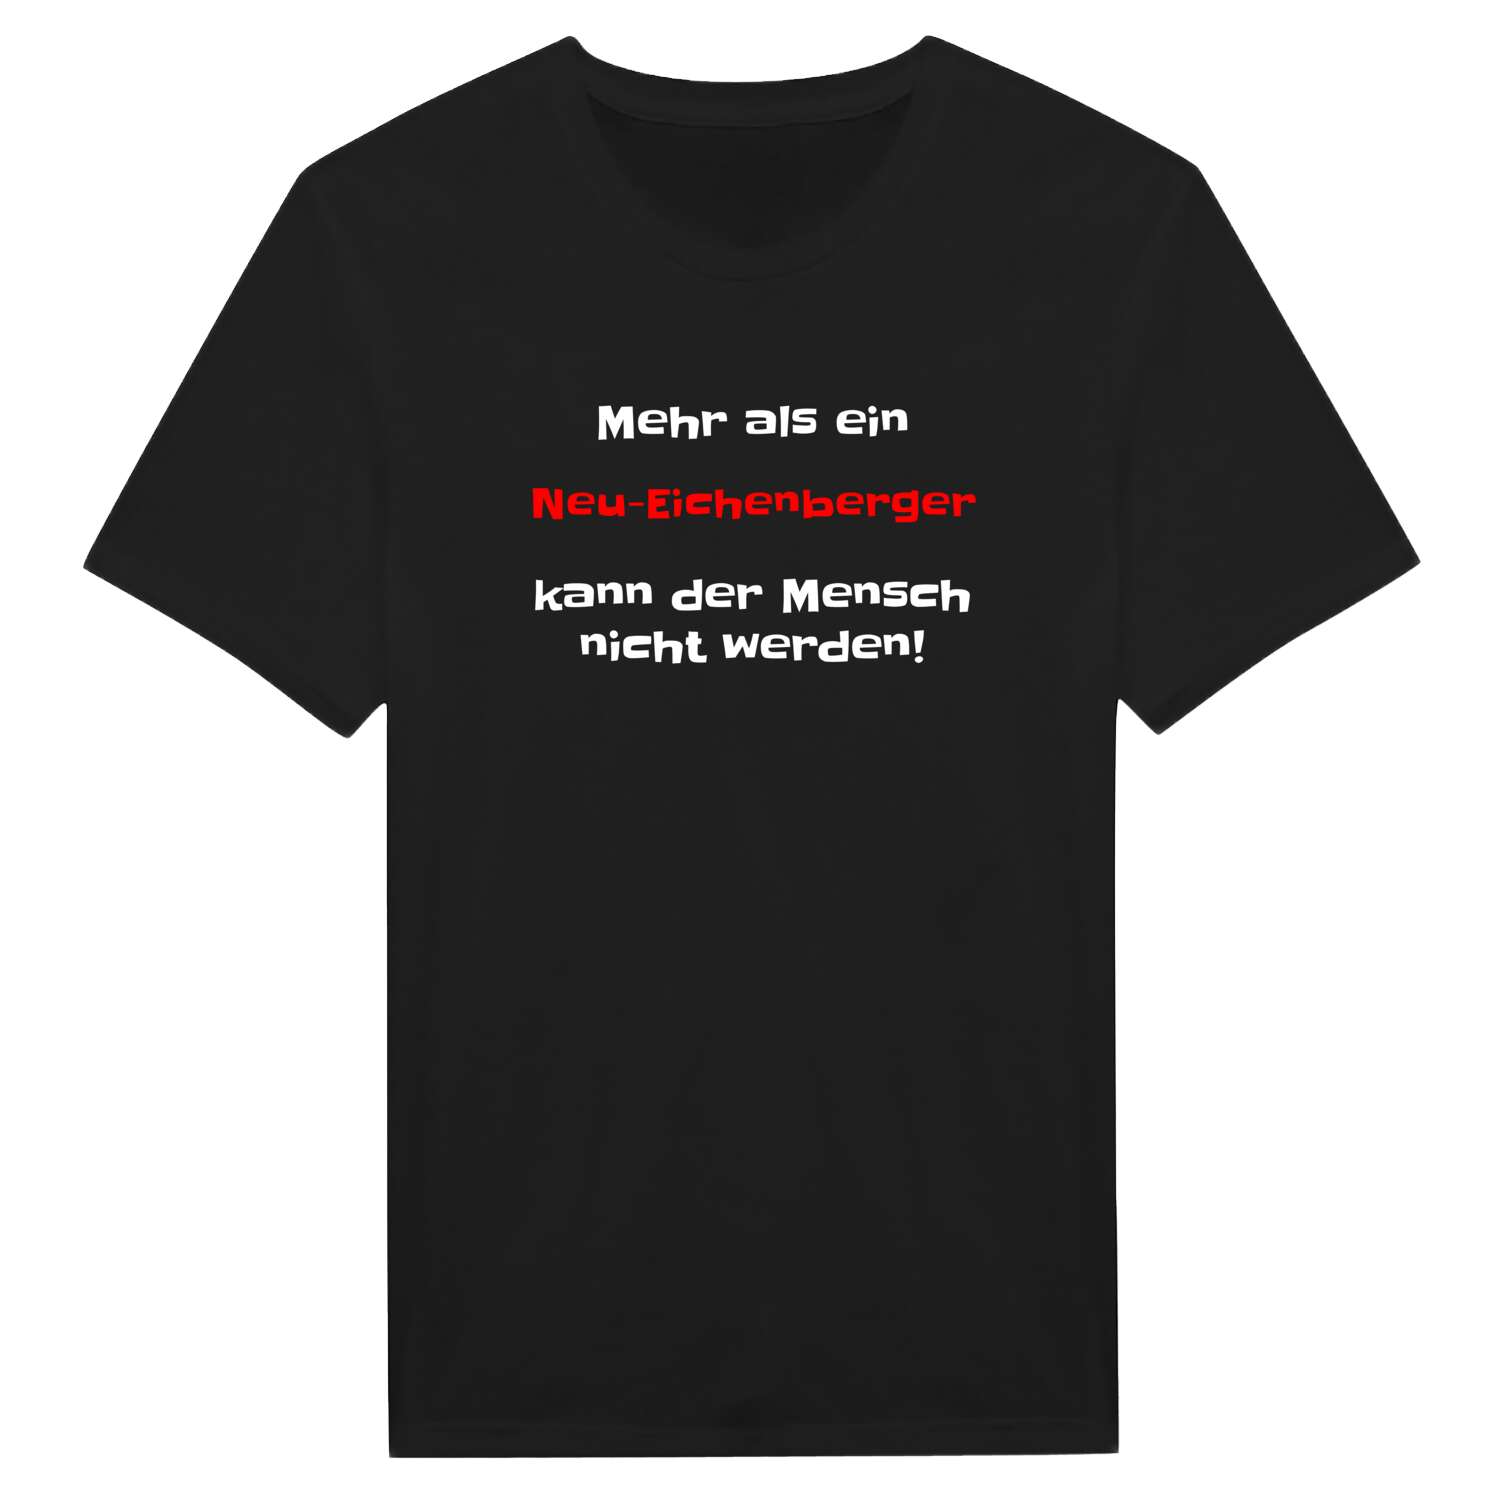 Neu-Eichenberg T-Shirt »Mehr als ein«